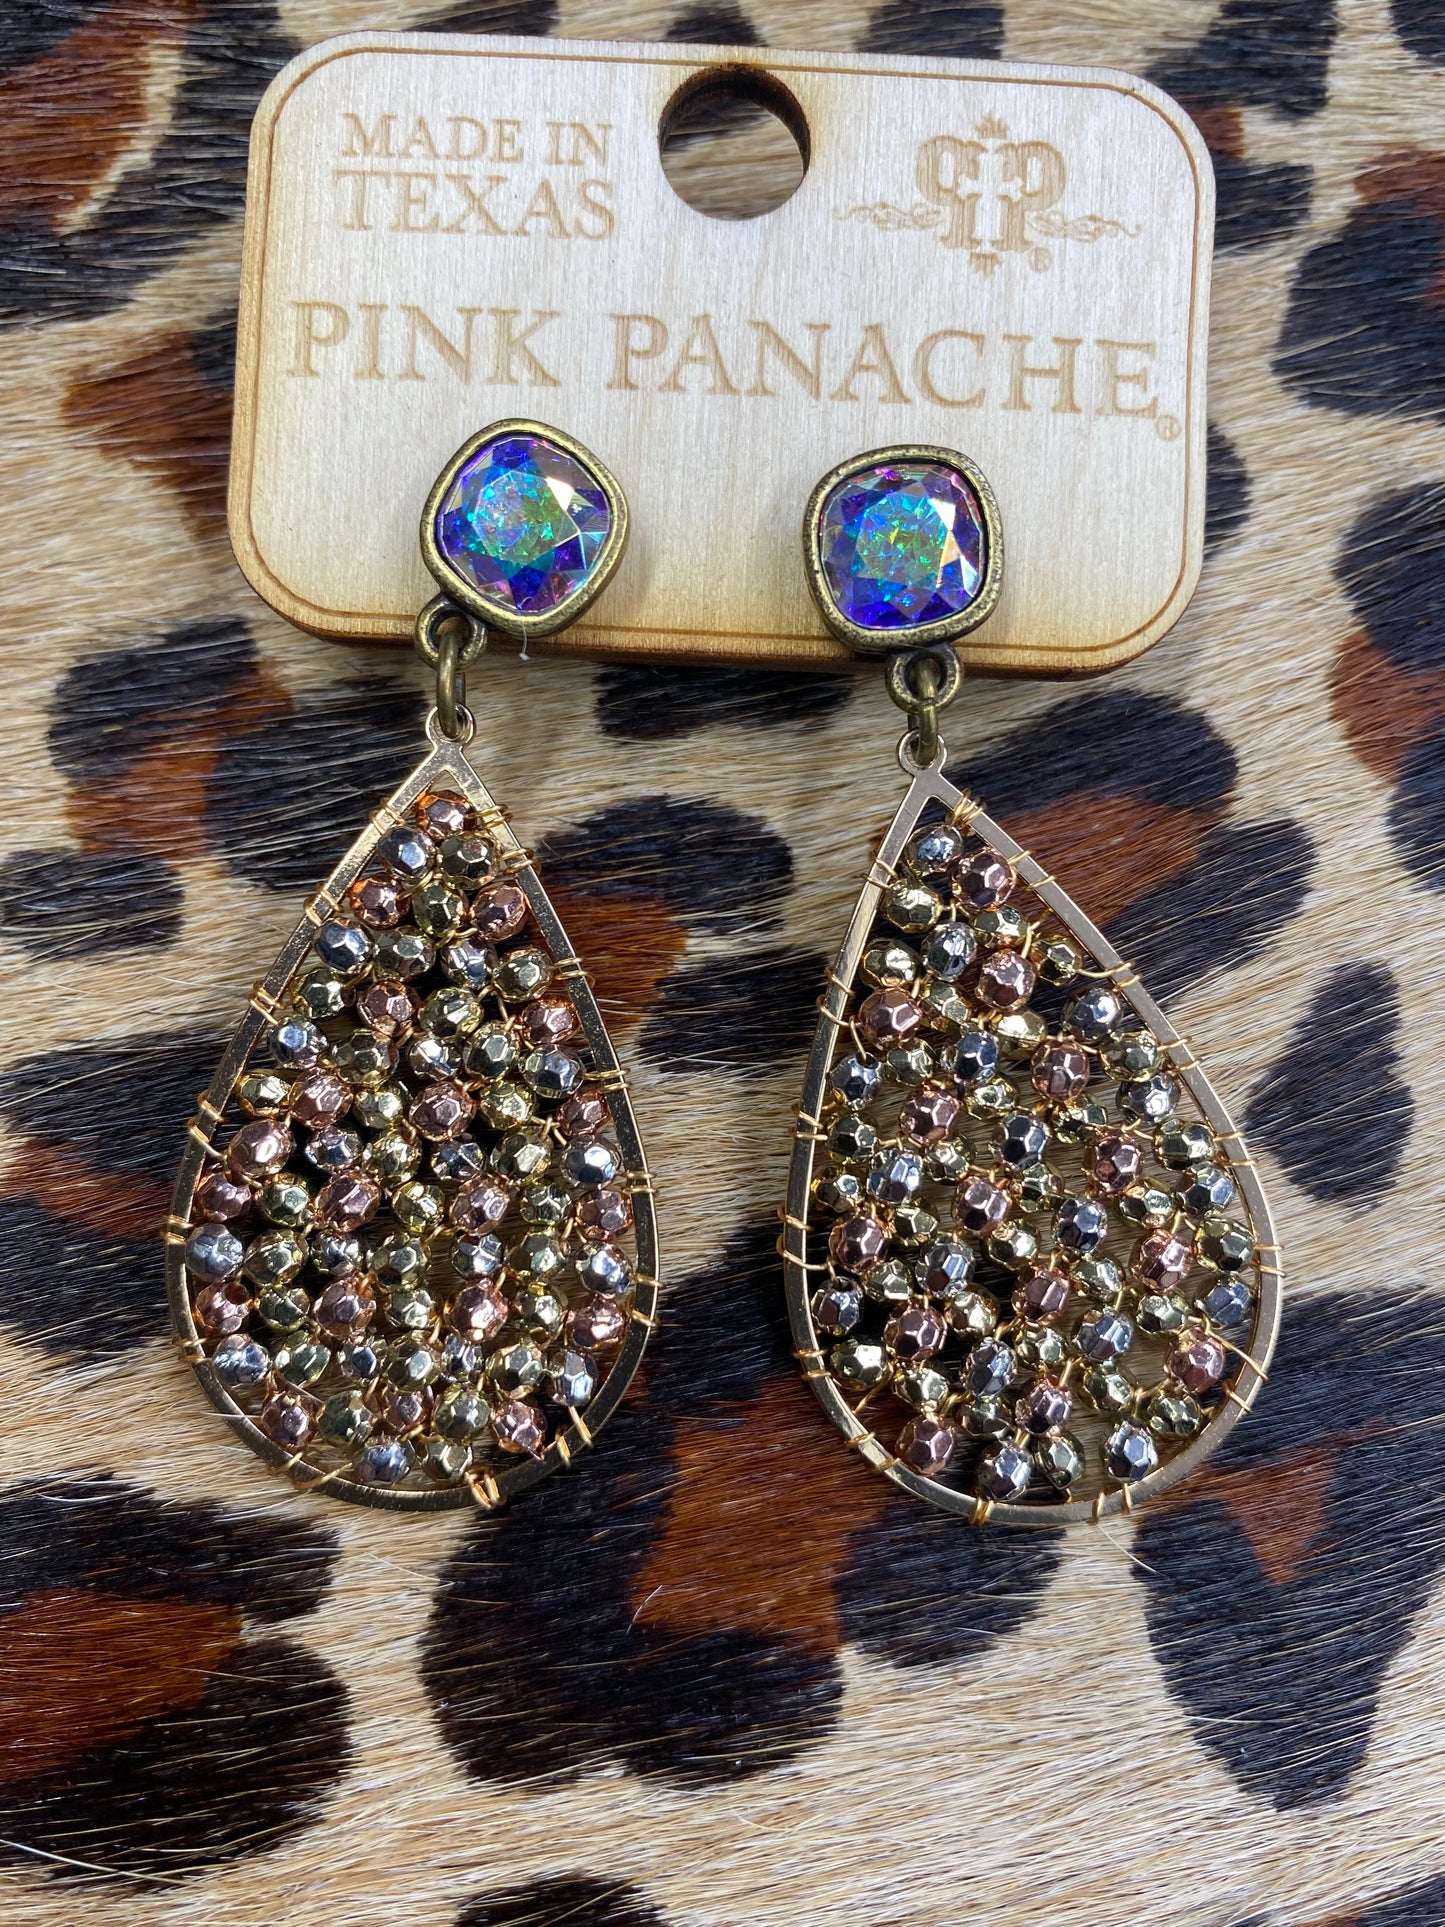 Pink Panache Earrings